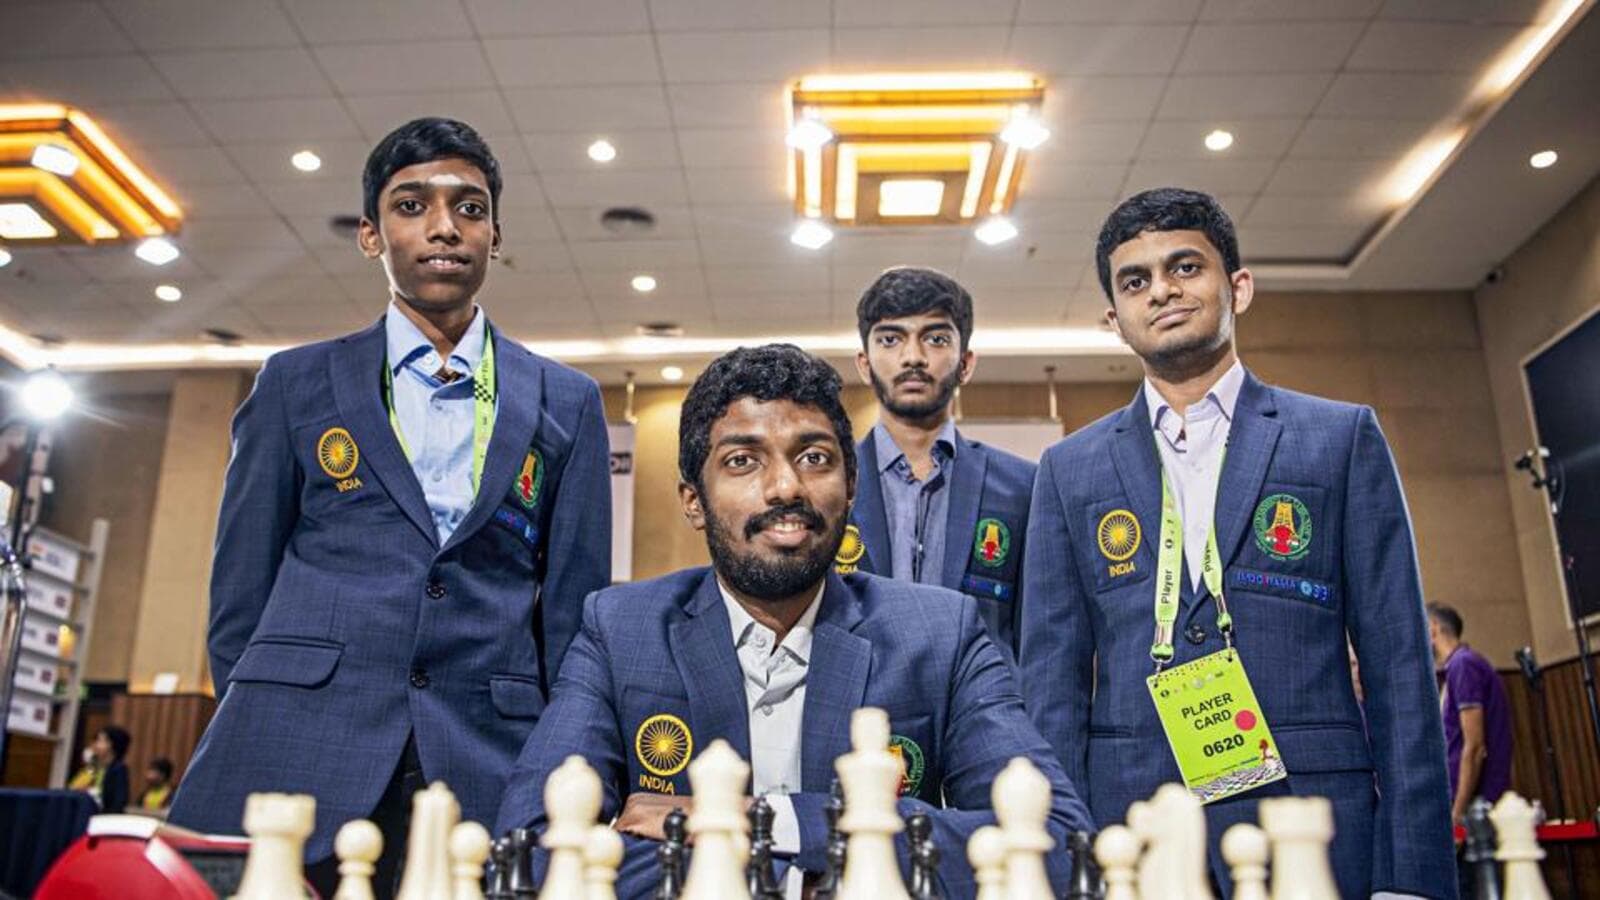 Dommaraju Gukesh (Gukesh D): Indian Chess Super Grandmaster